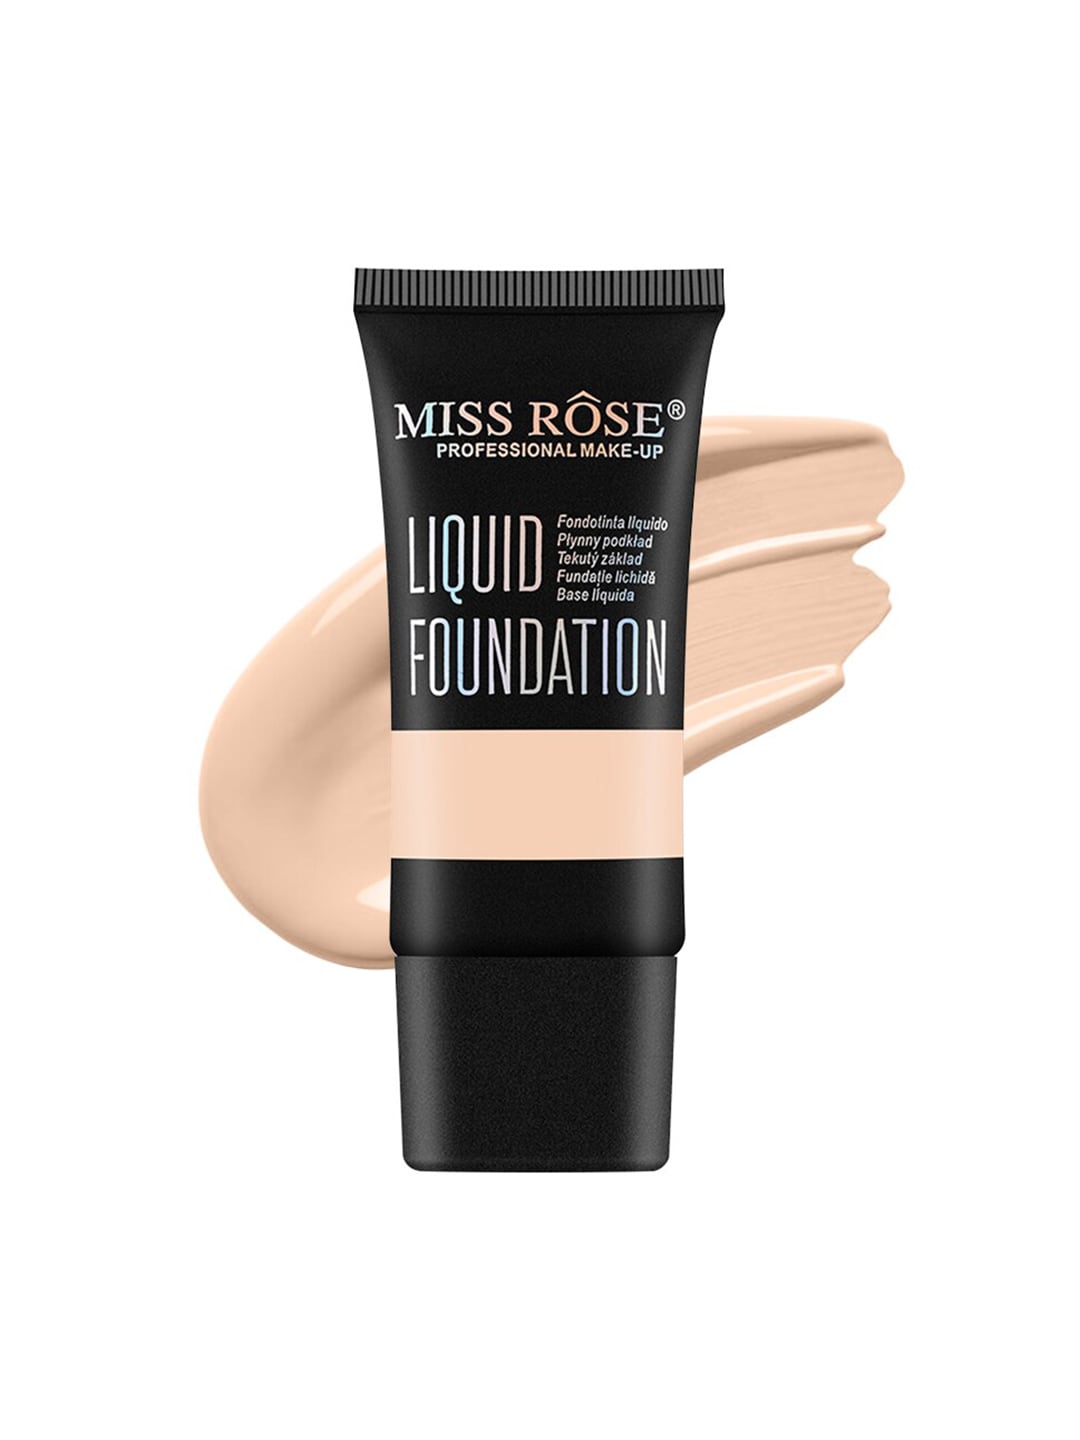 MISS ROSE Matte Finish Liquid Foundation - Beige 01 Price in India